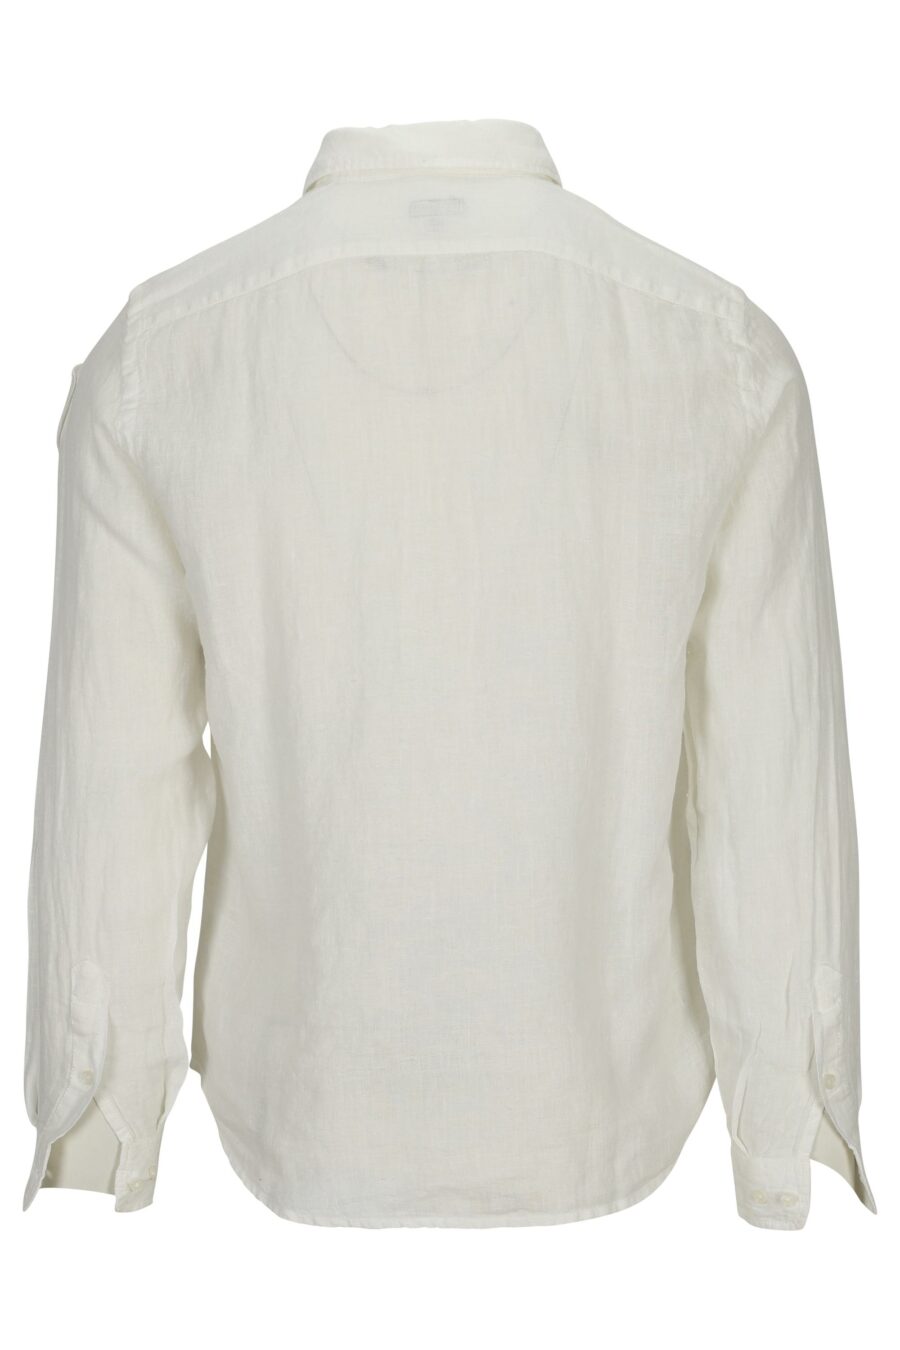 Camisa blanca con minilogo escudo - 8058610776718 1